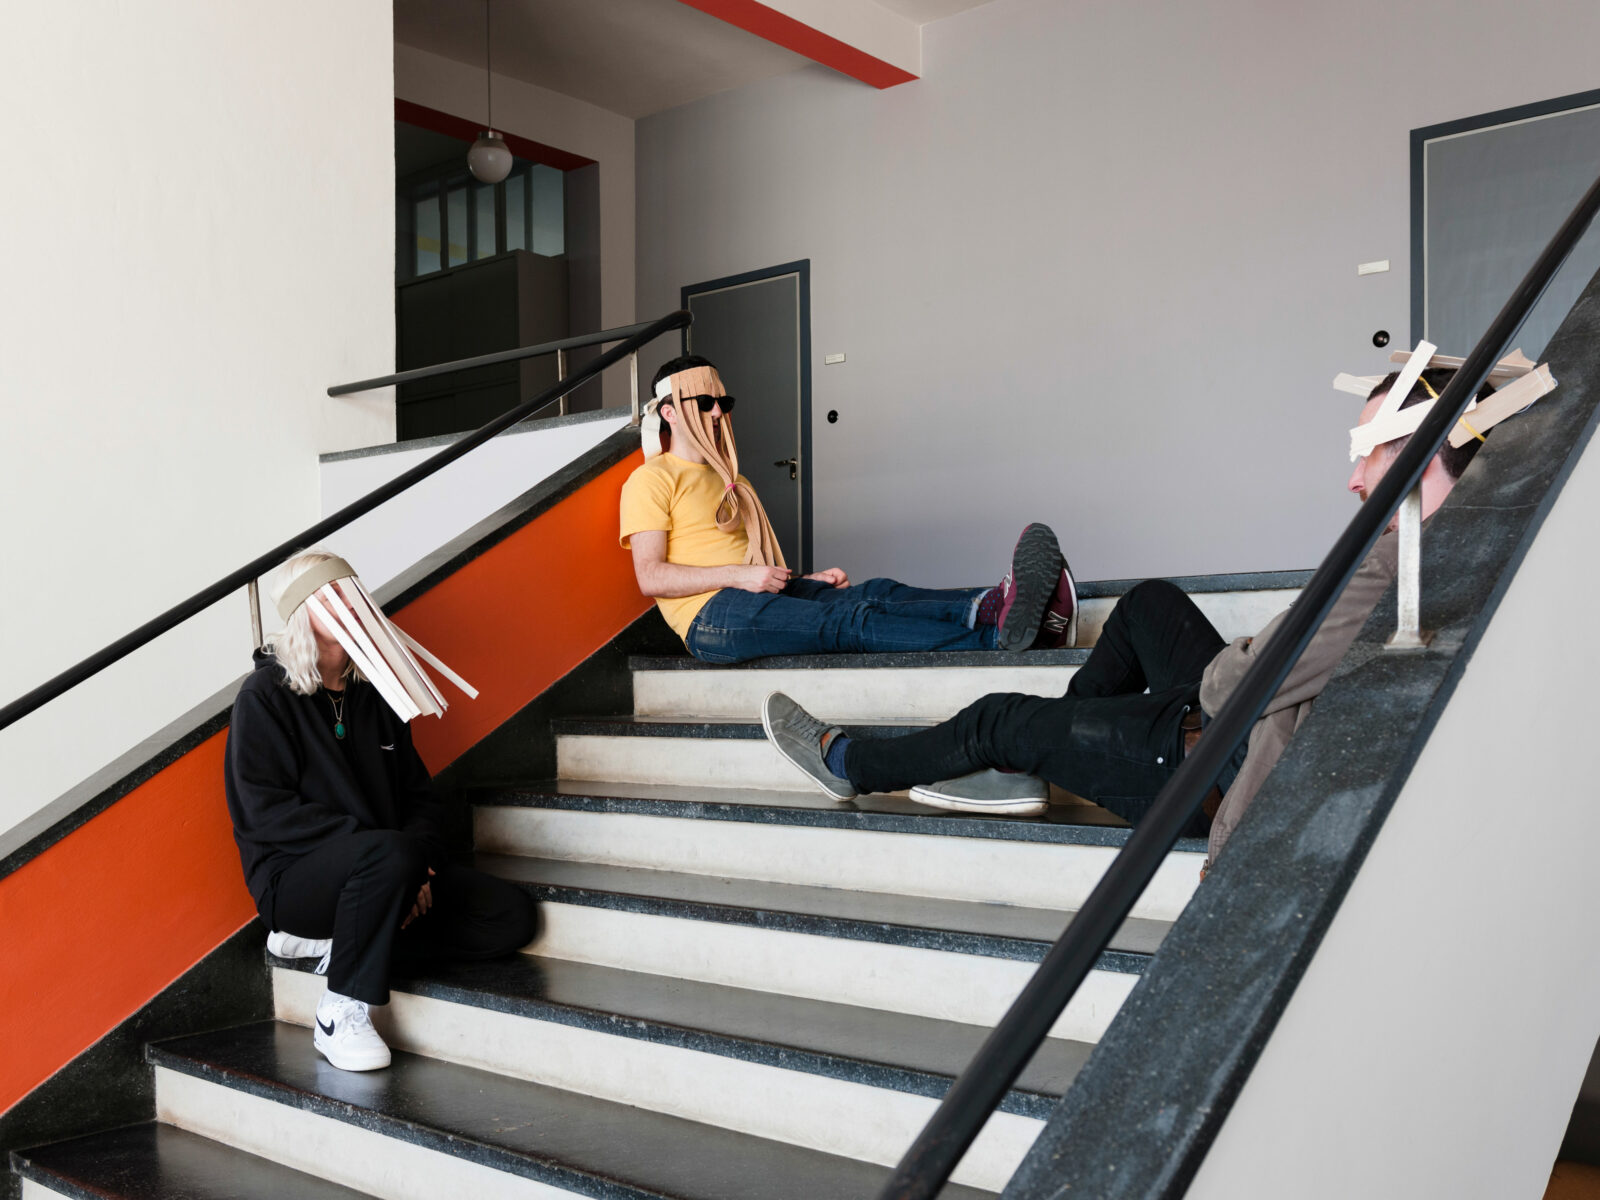 Drei Personen sitzten mit Masken auf der Treppe im Bauhausgebäude.